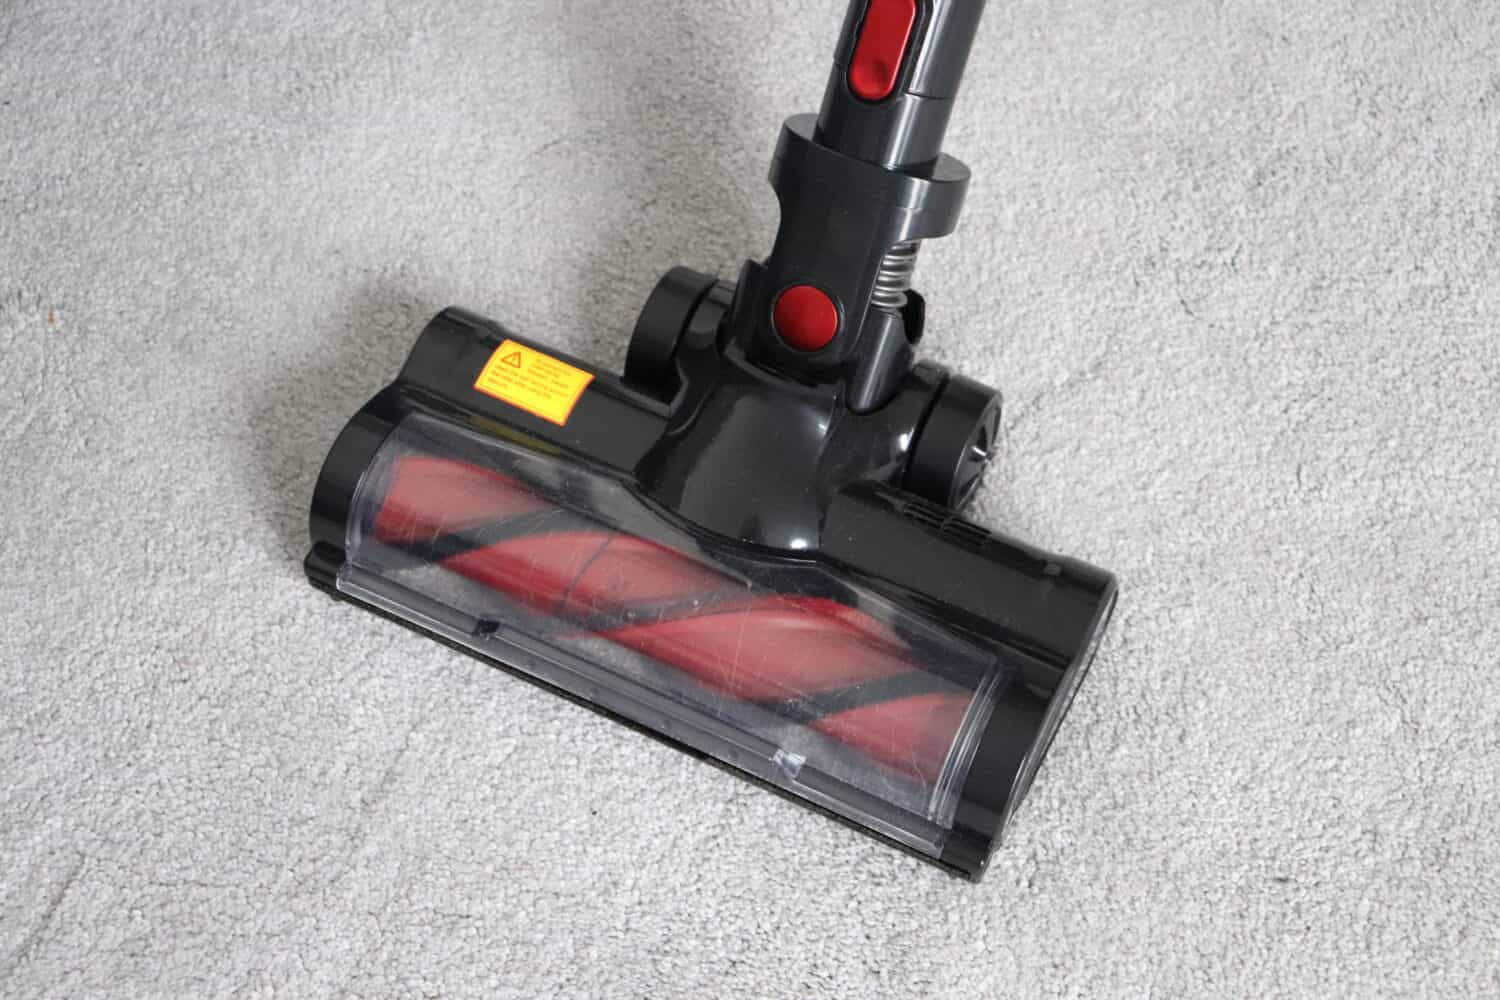 MooSoo 4-in-1 Cordless Vacuum Cleaner Review